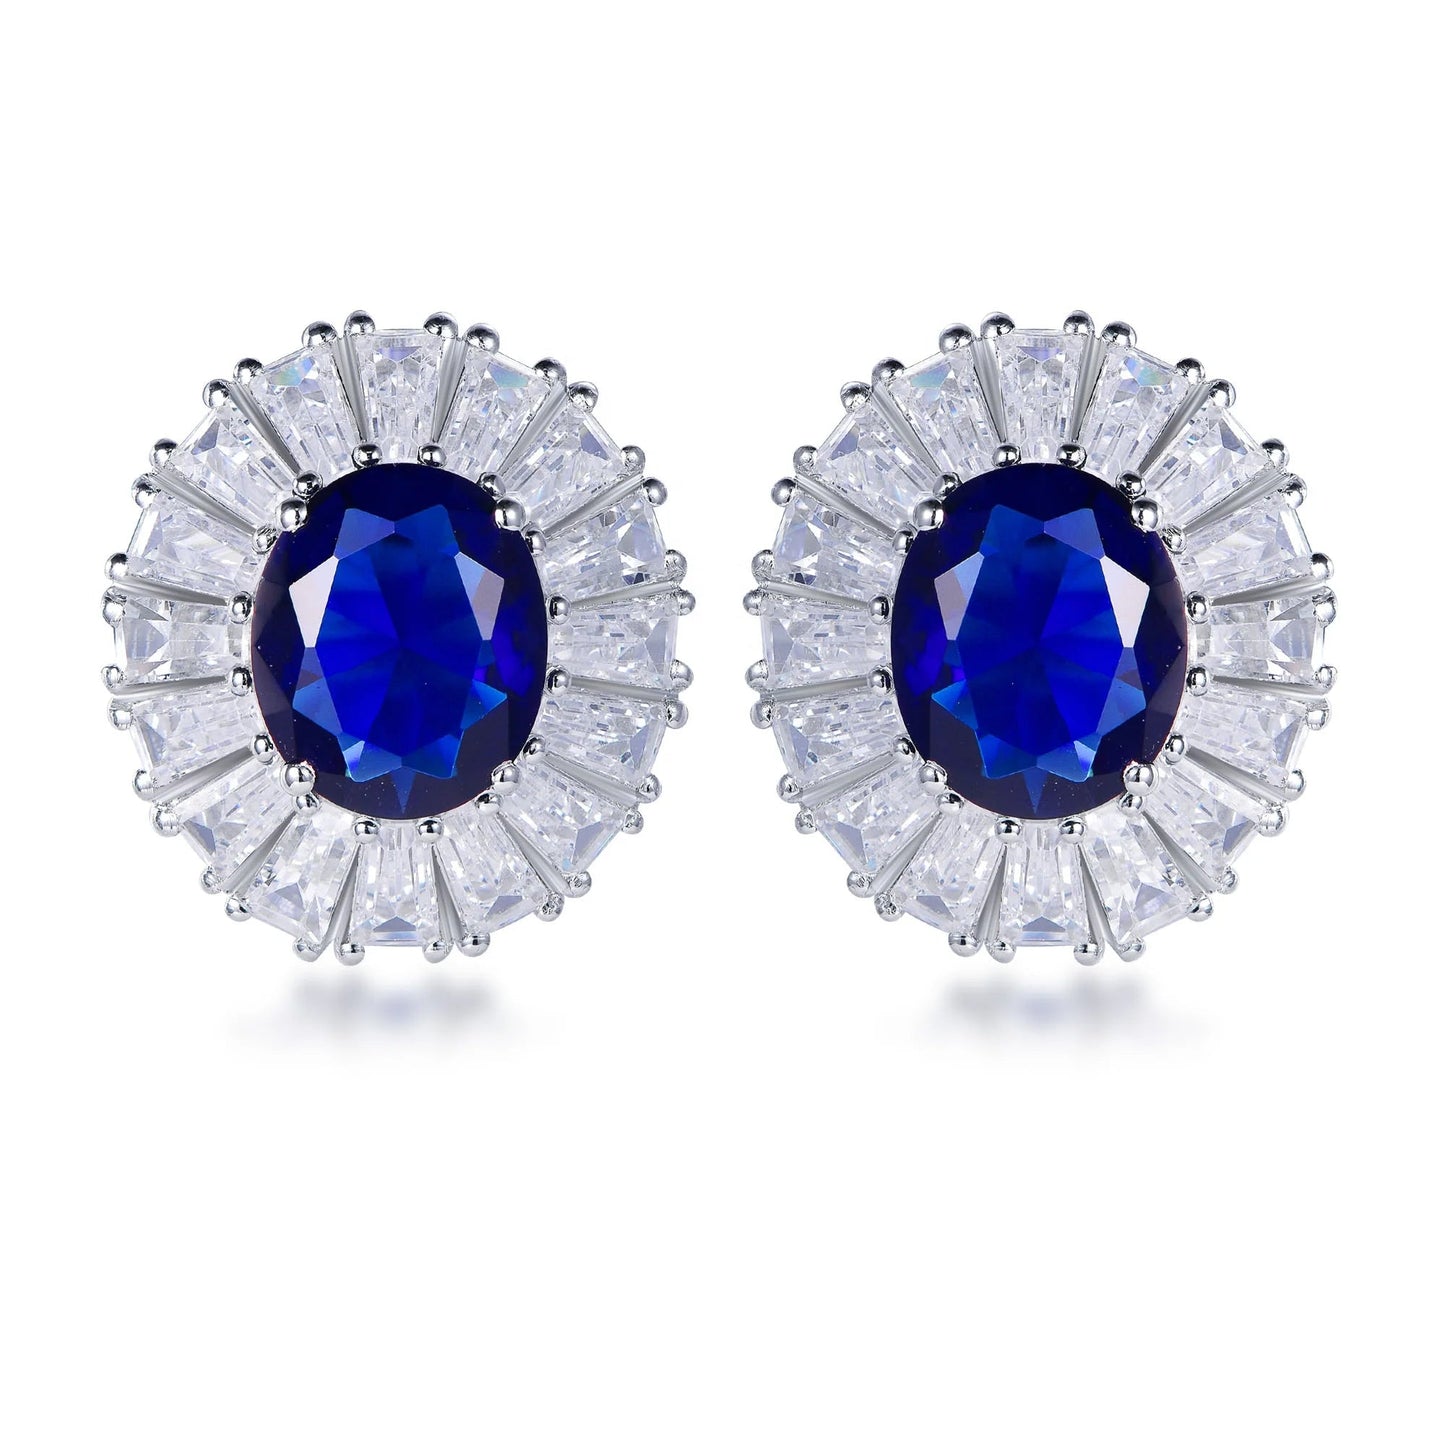 Sterling silver earrings 925 blue stone earrings s925 micro zirconia stud earrings Kirin Jewelry